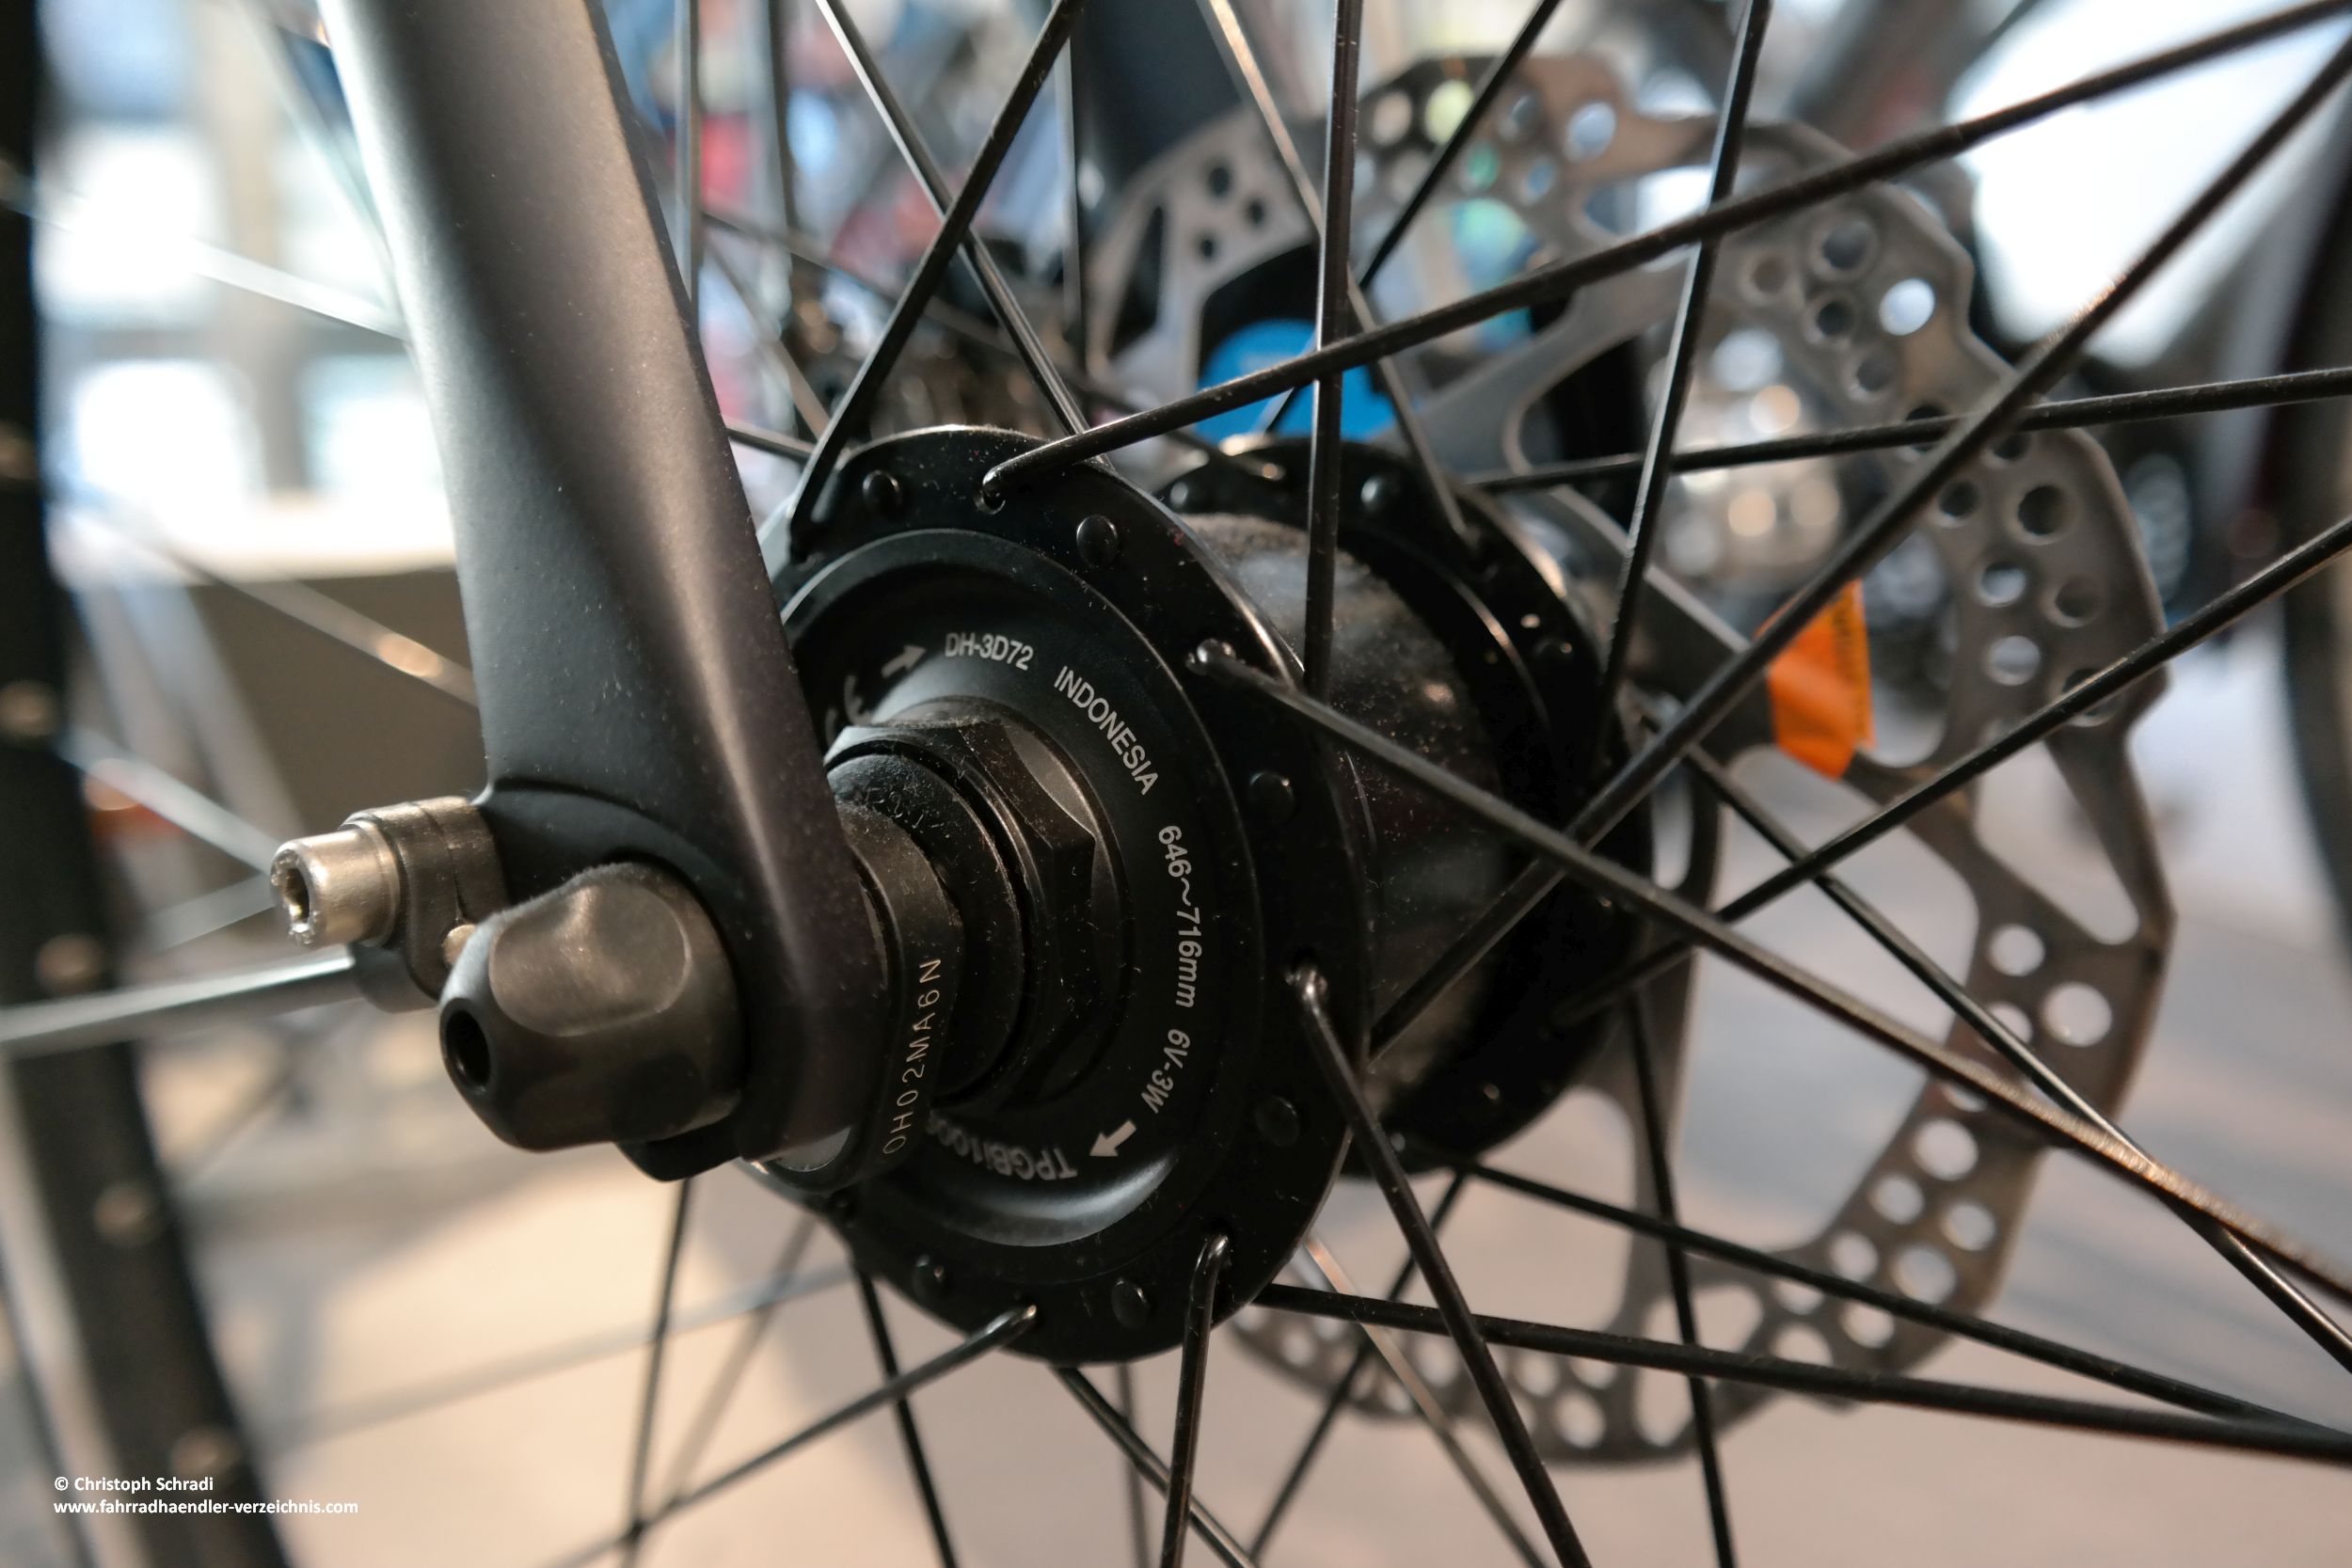 Dynamo am Fahrrad - der Nabendynamo stellt die bisher beste Variante der Fahrradlichtmaschine dar 